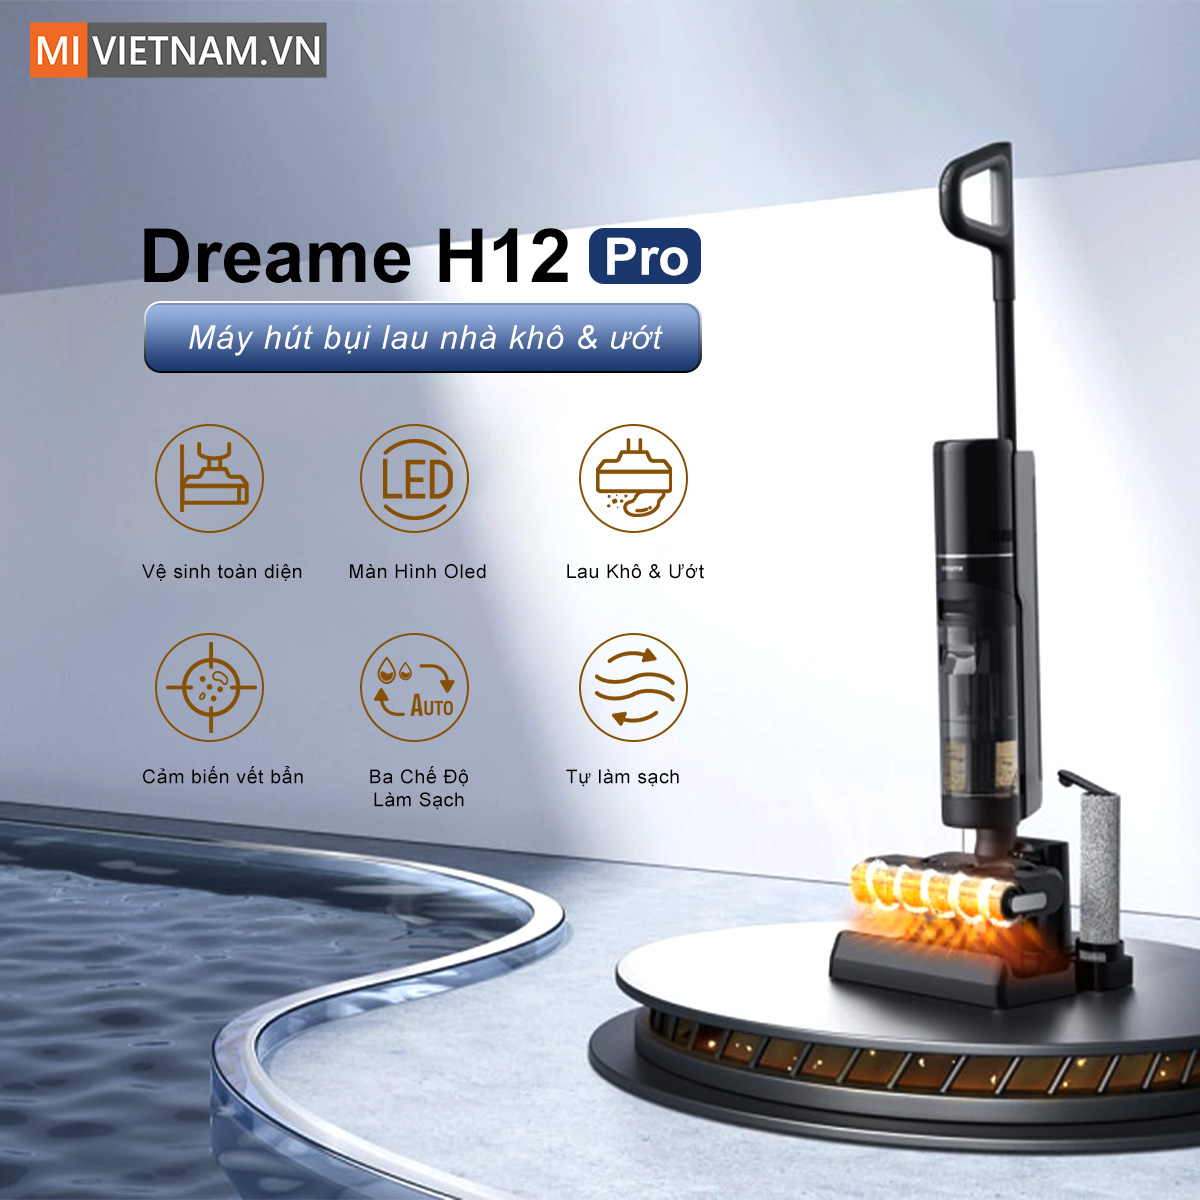 Máy hút bụi lau nhà Dreame H12 Pro